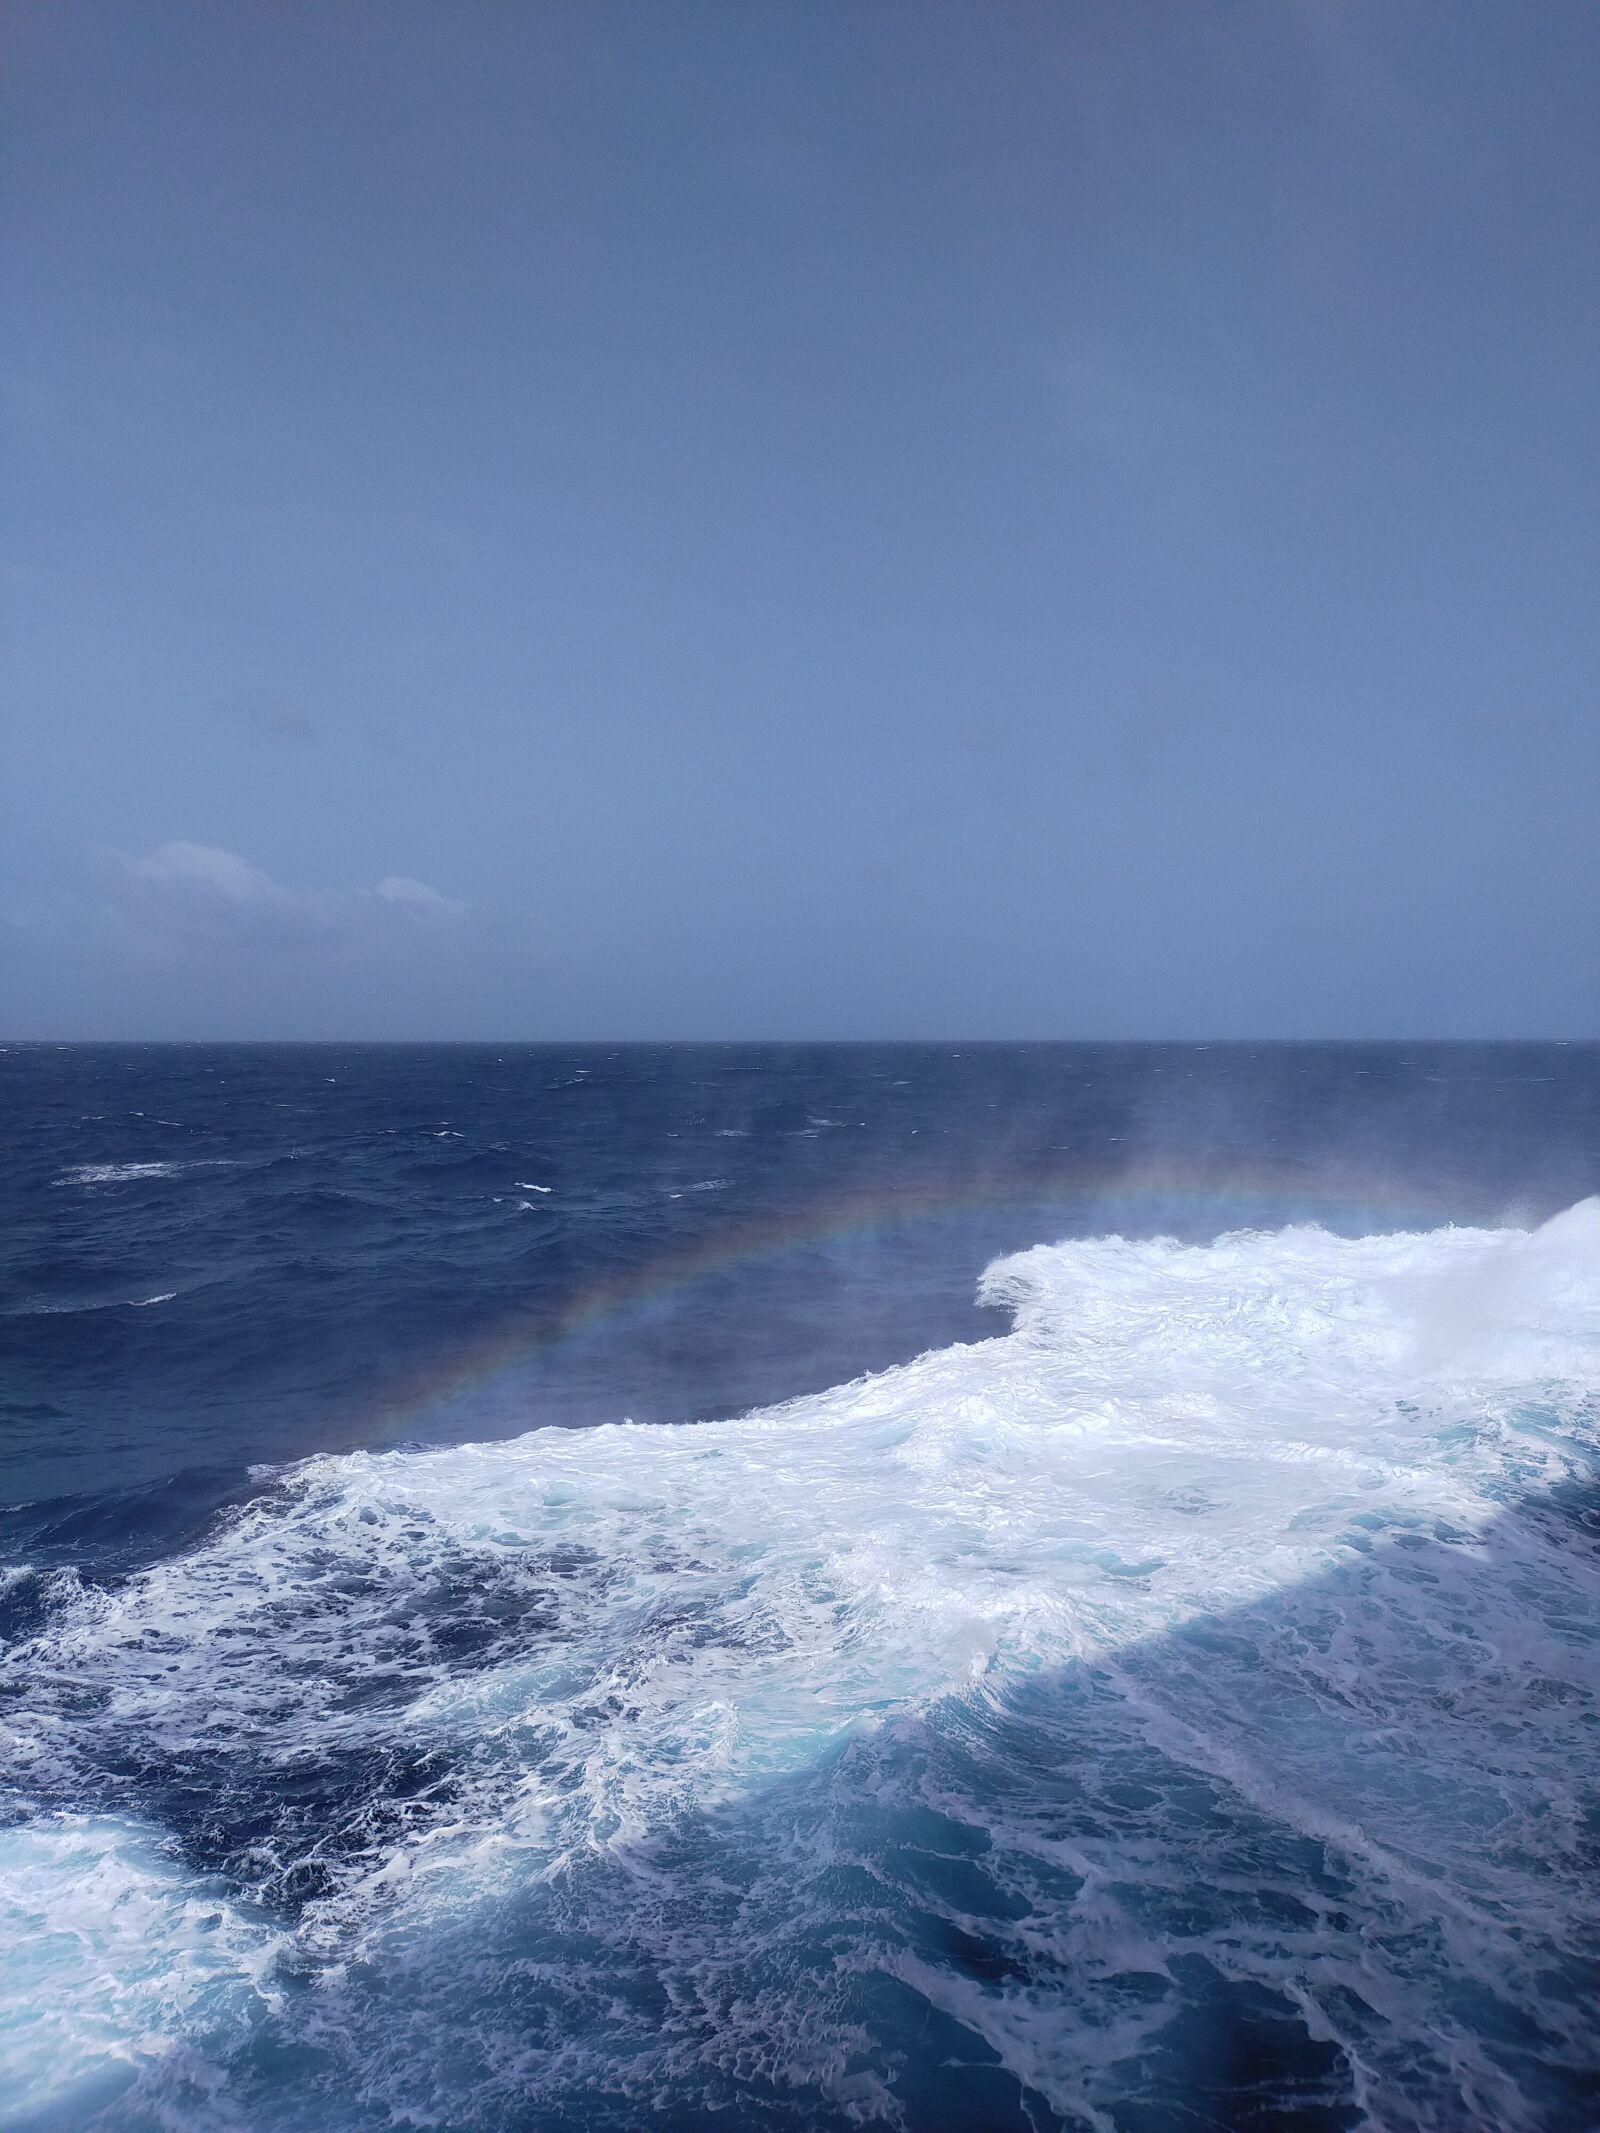 OPPO A9 2020 sample photo. Ocean, mist, rainbow photography